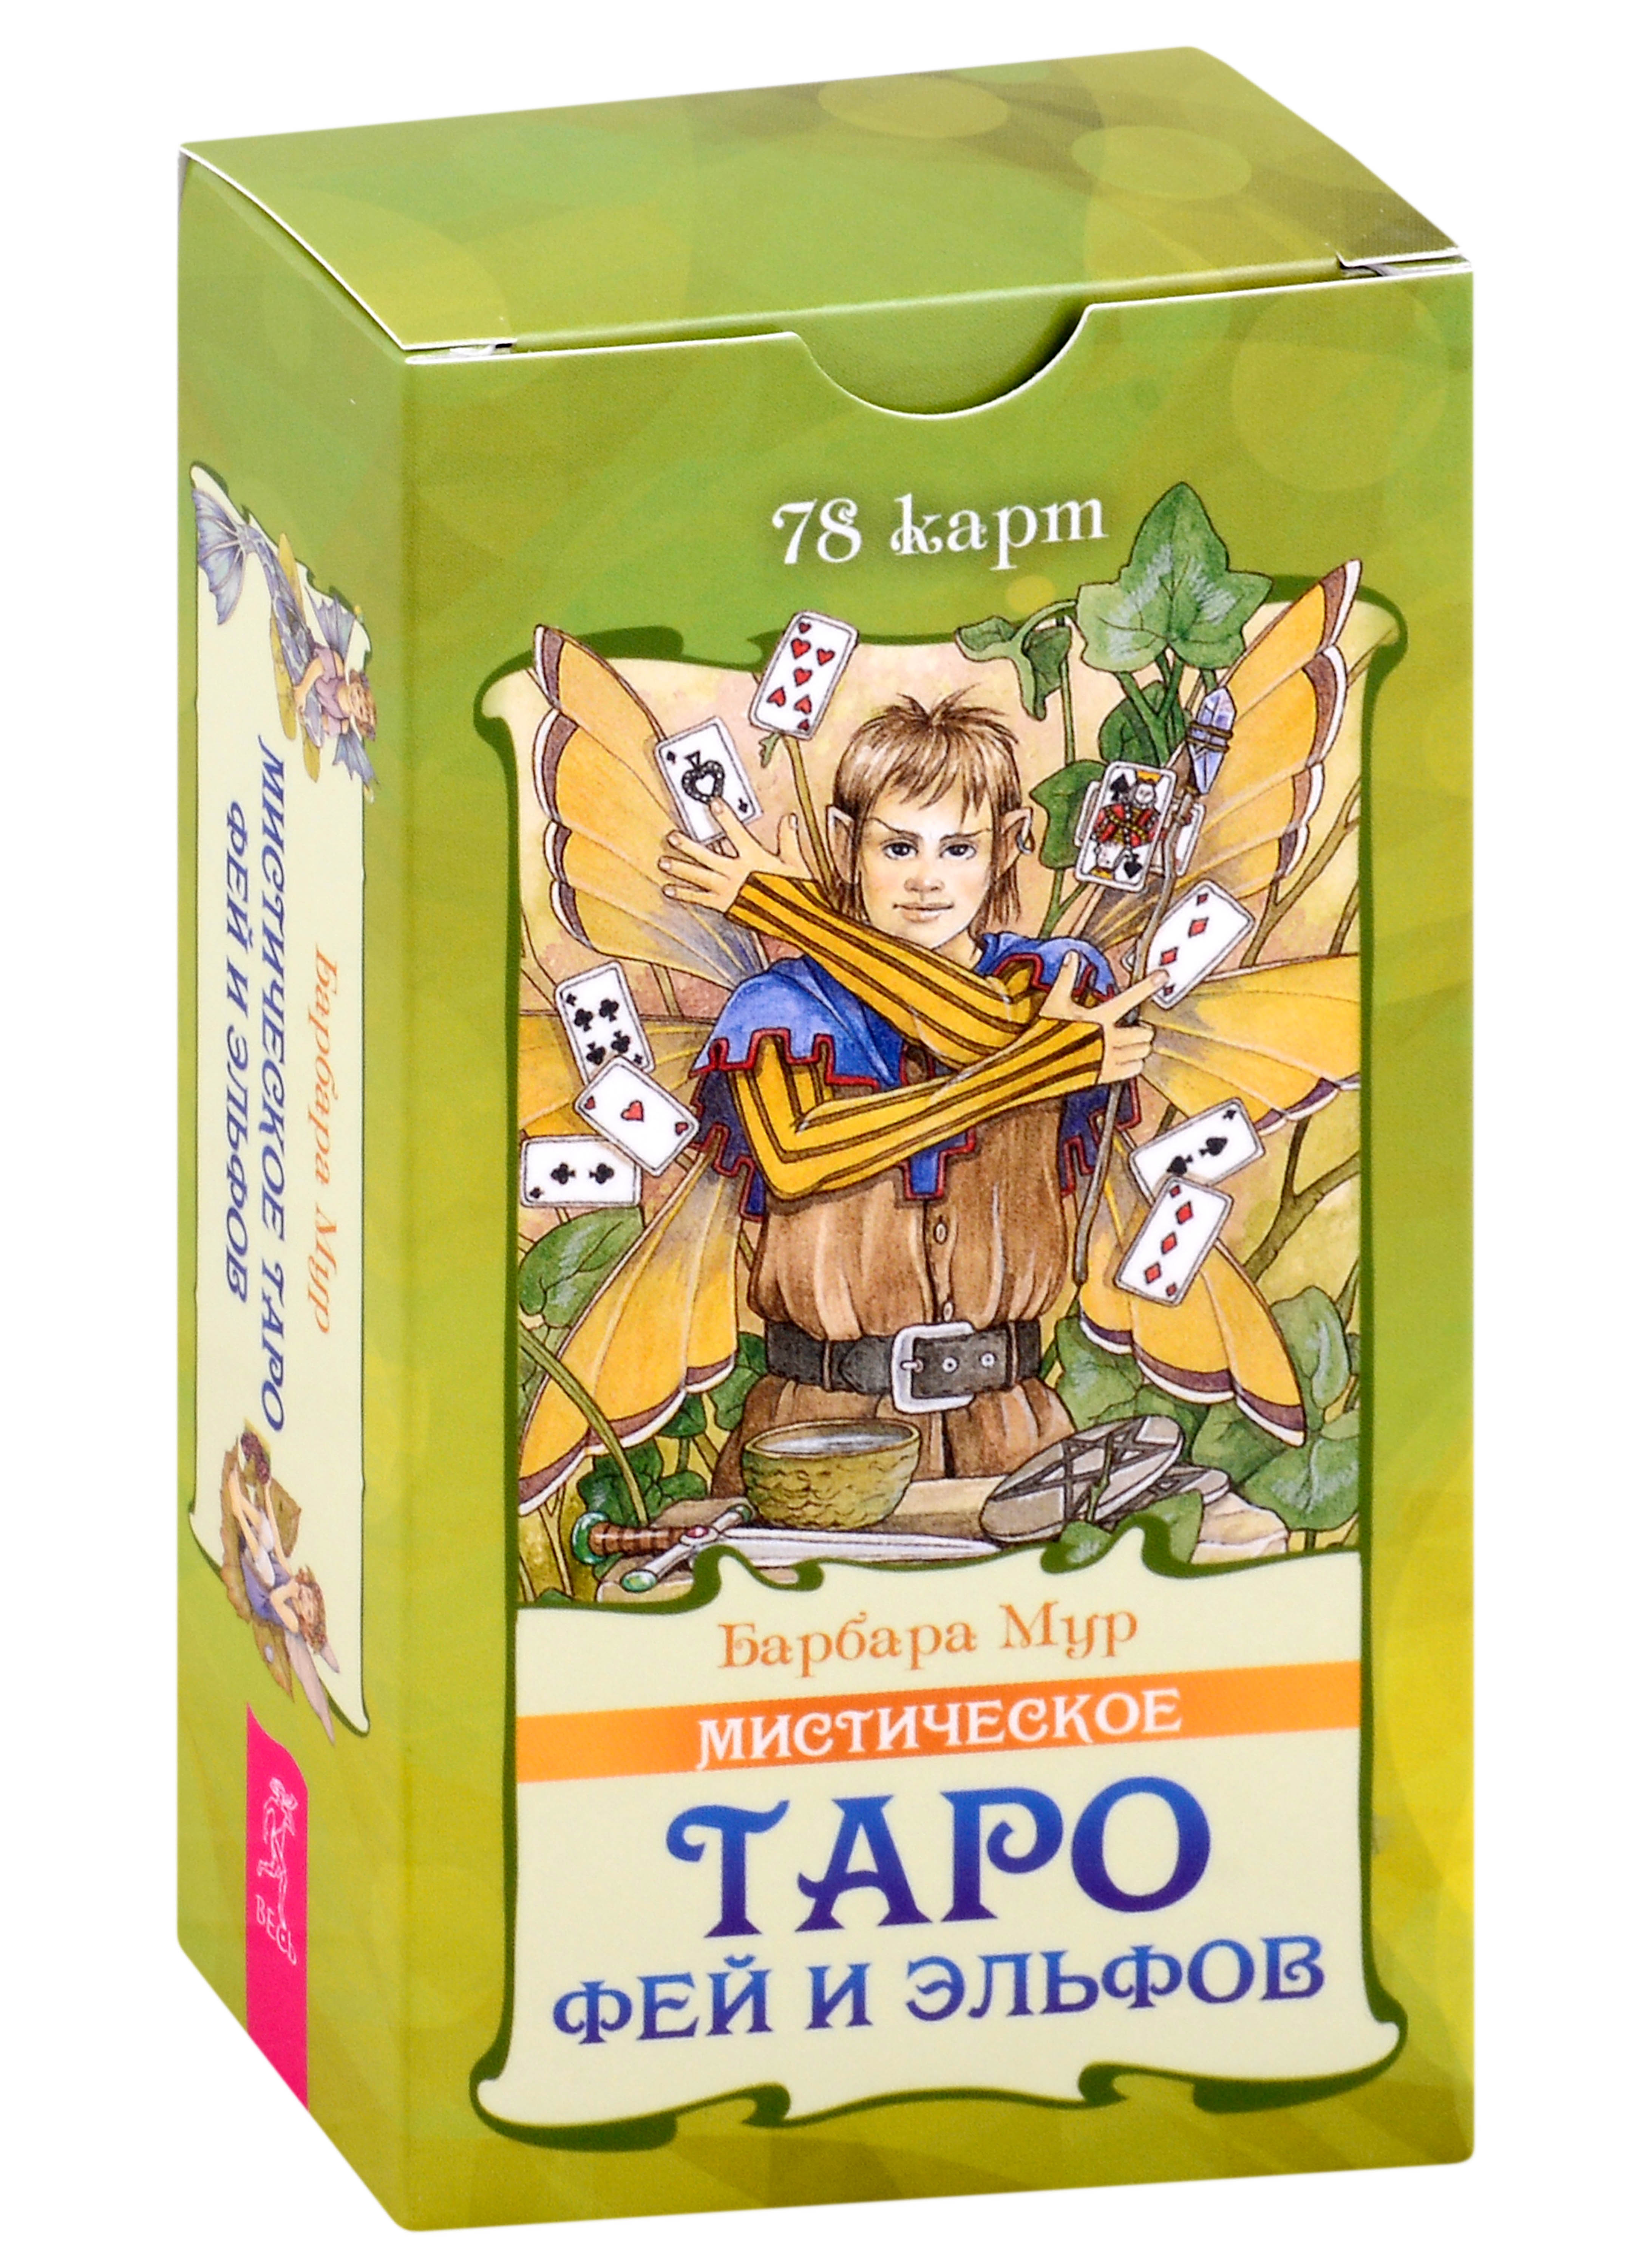 Мистическое Таро фей и эльфов (78 карт) (5015) таро эльфов